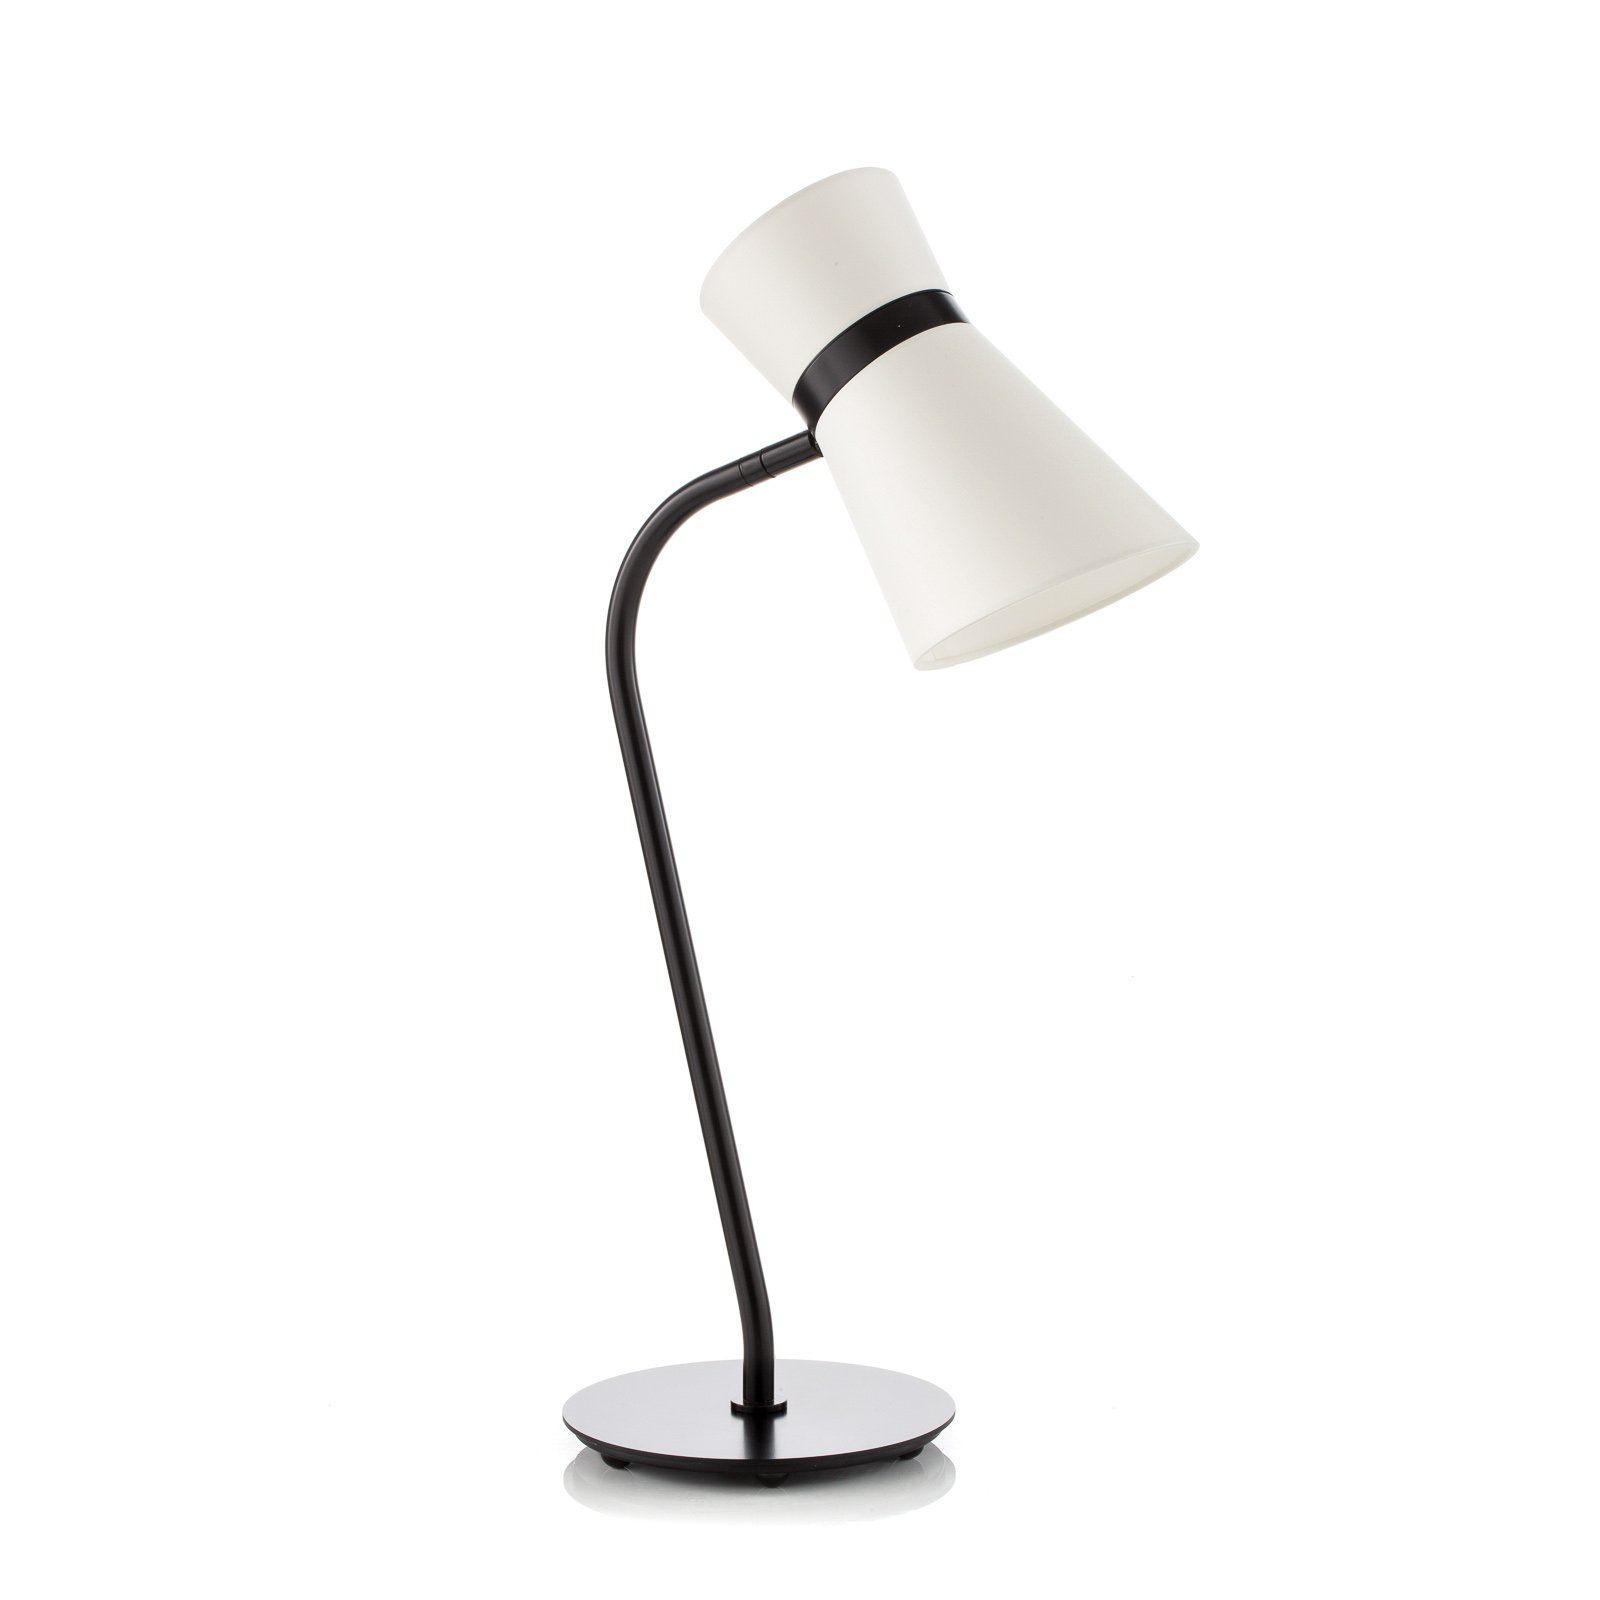 Baulmann 13.326.69-4204 Galda lampa, melnā un baltā krāsā